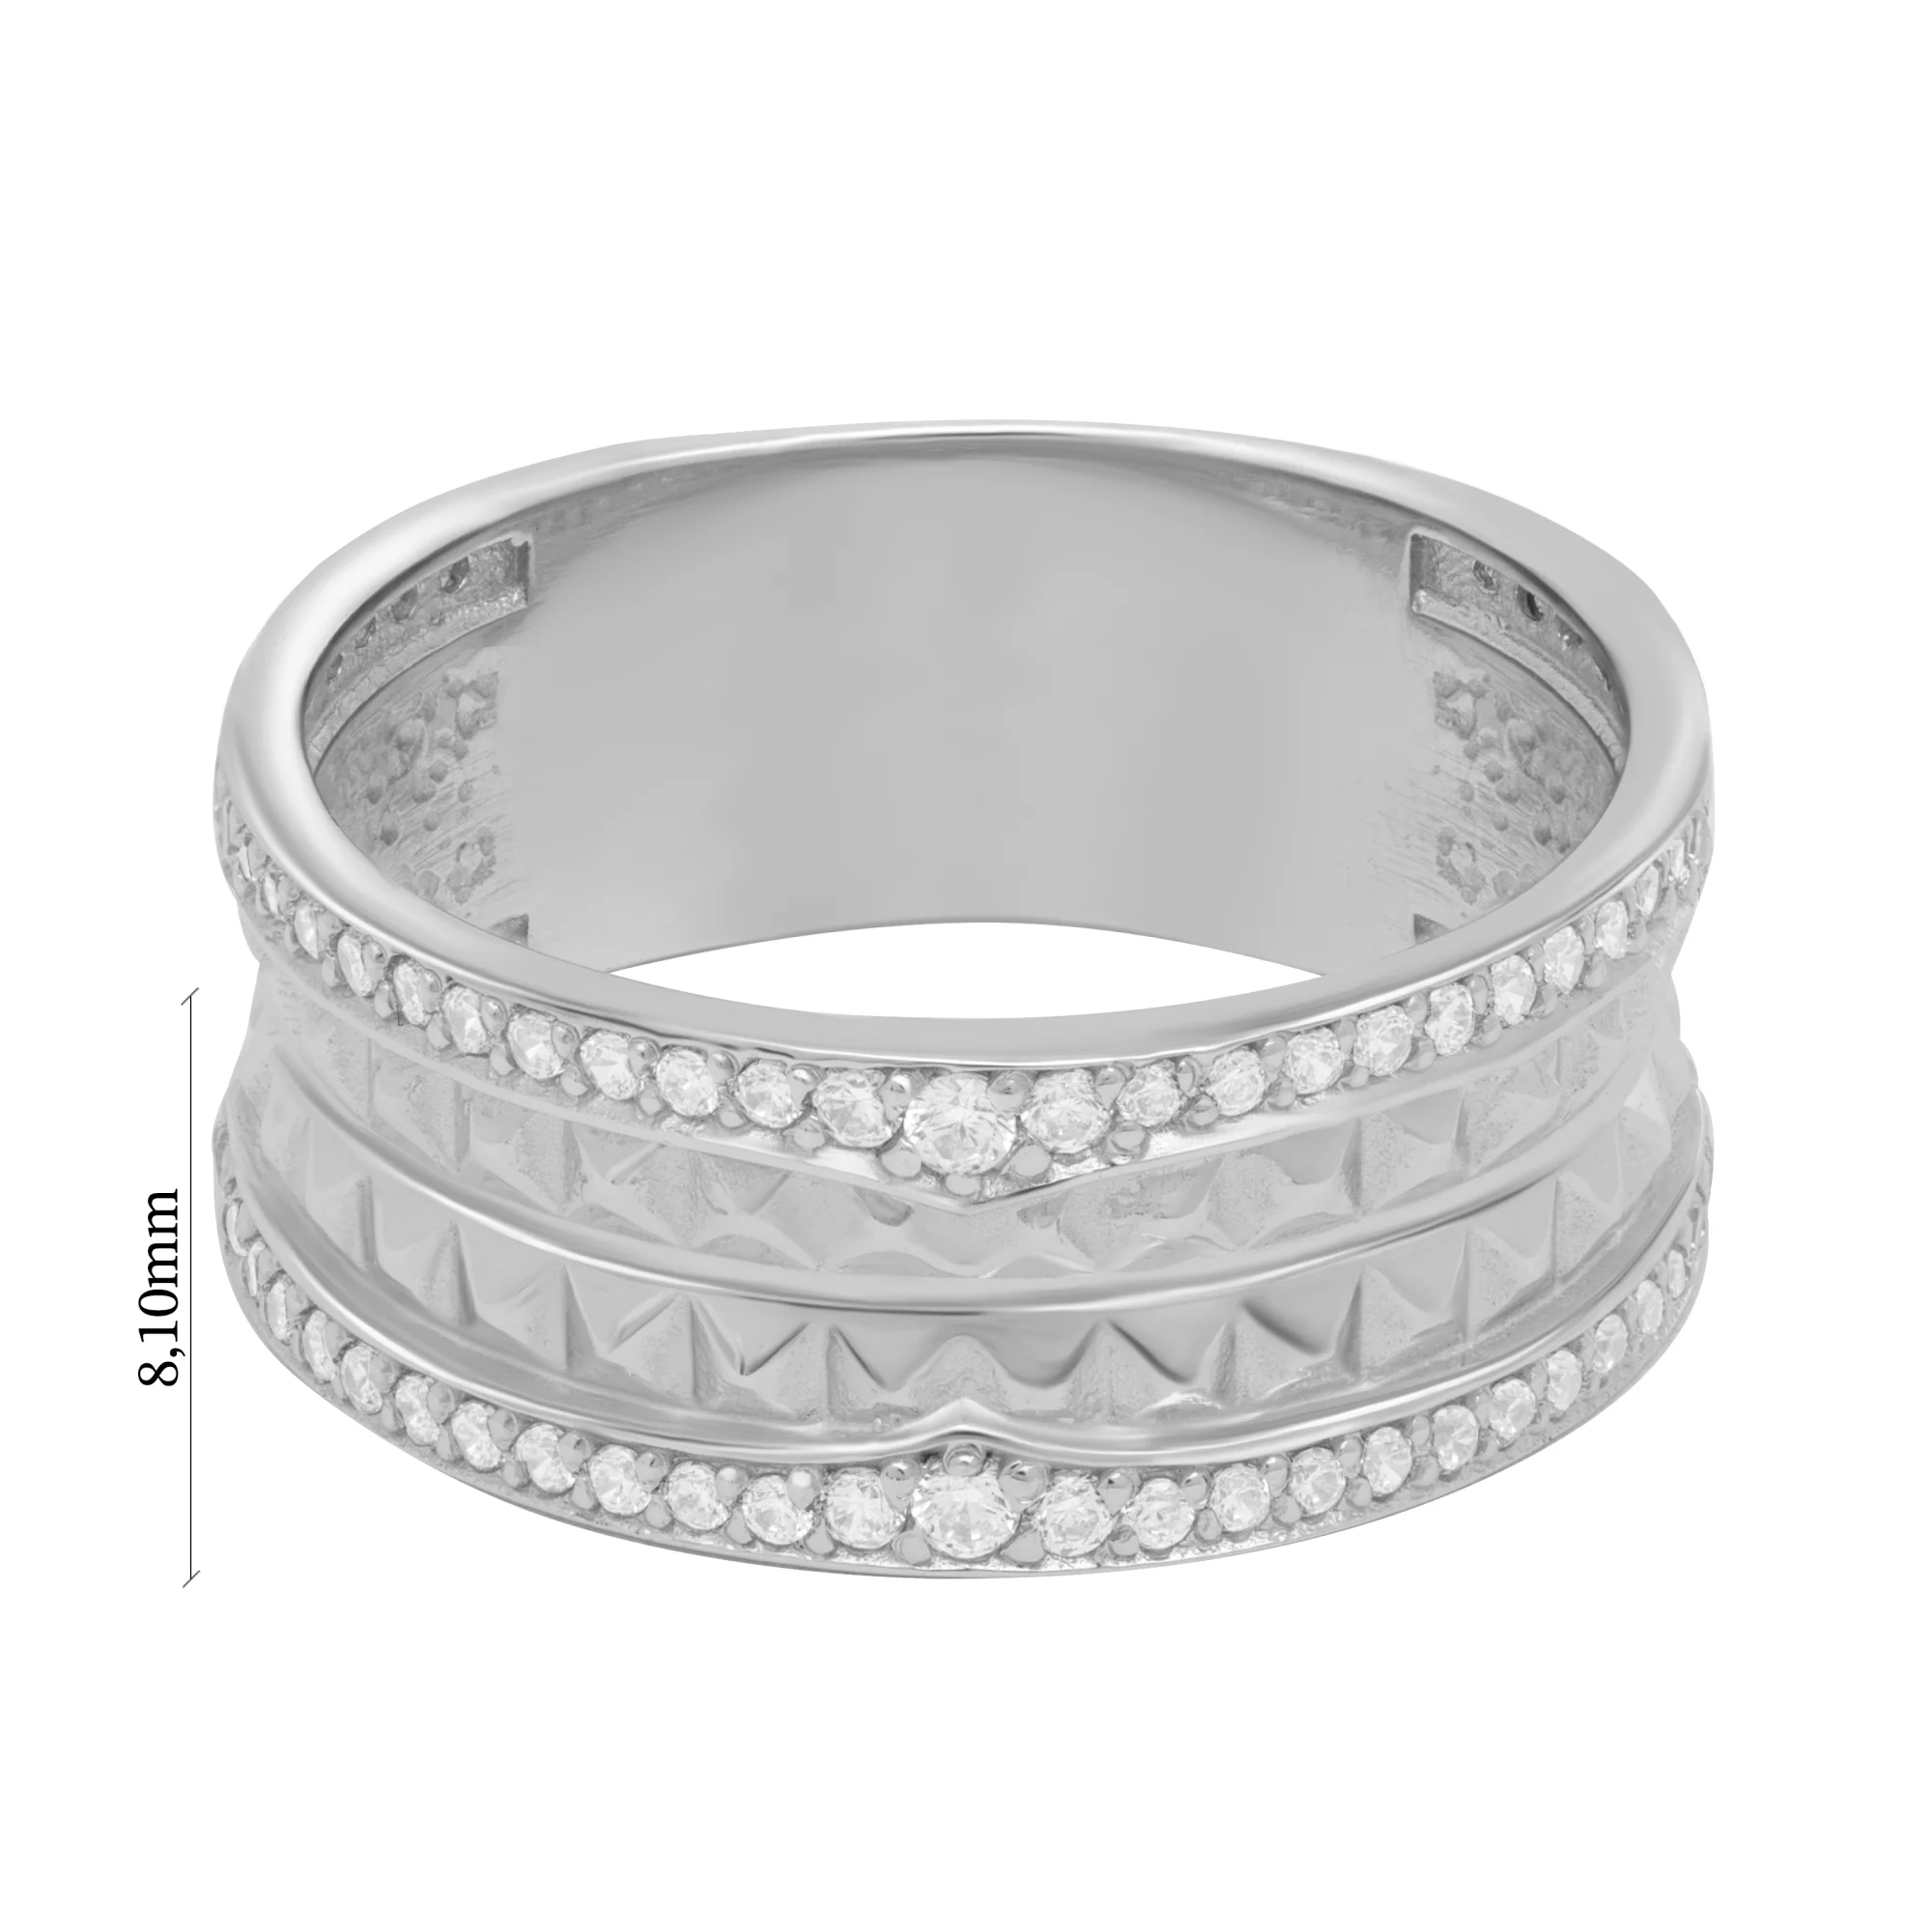 Широкое кольцо из белого золота с фианитами - 1614515 – изображение 5